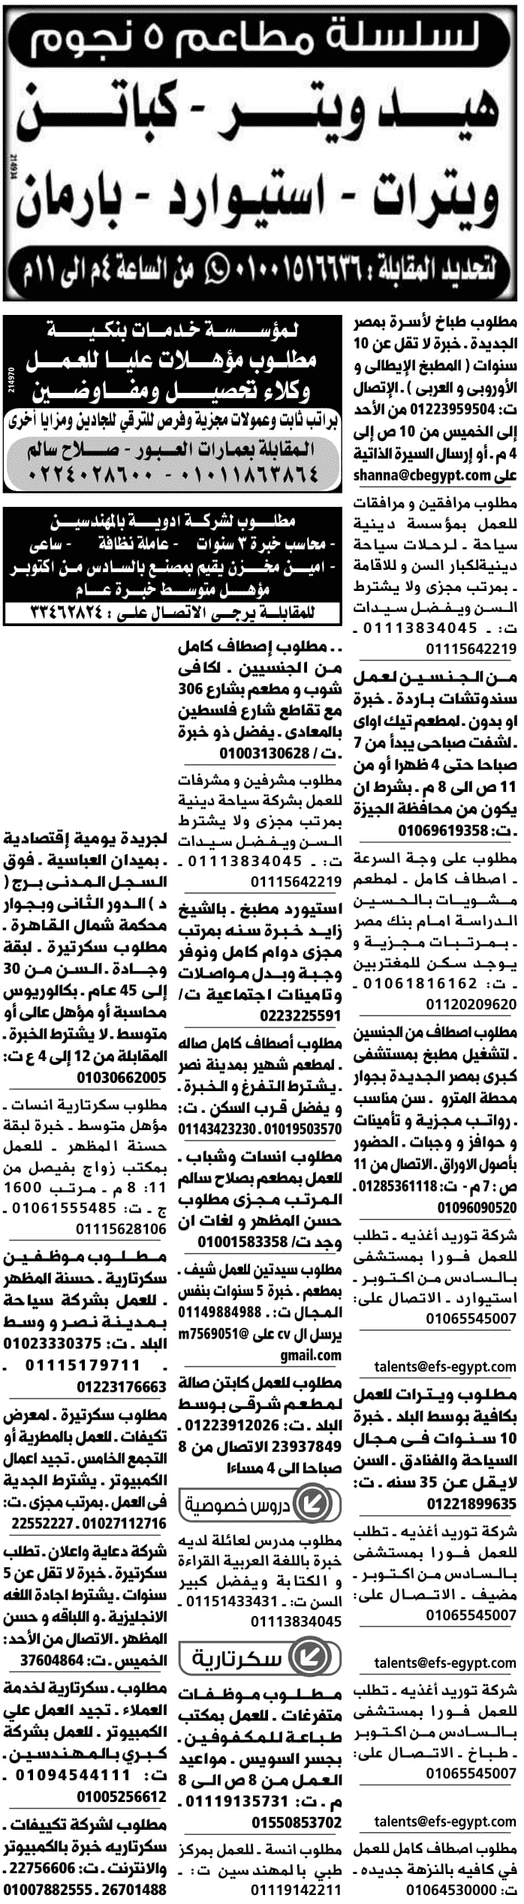 وظائف جريدة الوسيط مصر الاثنين 1/4/2019 2